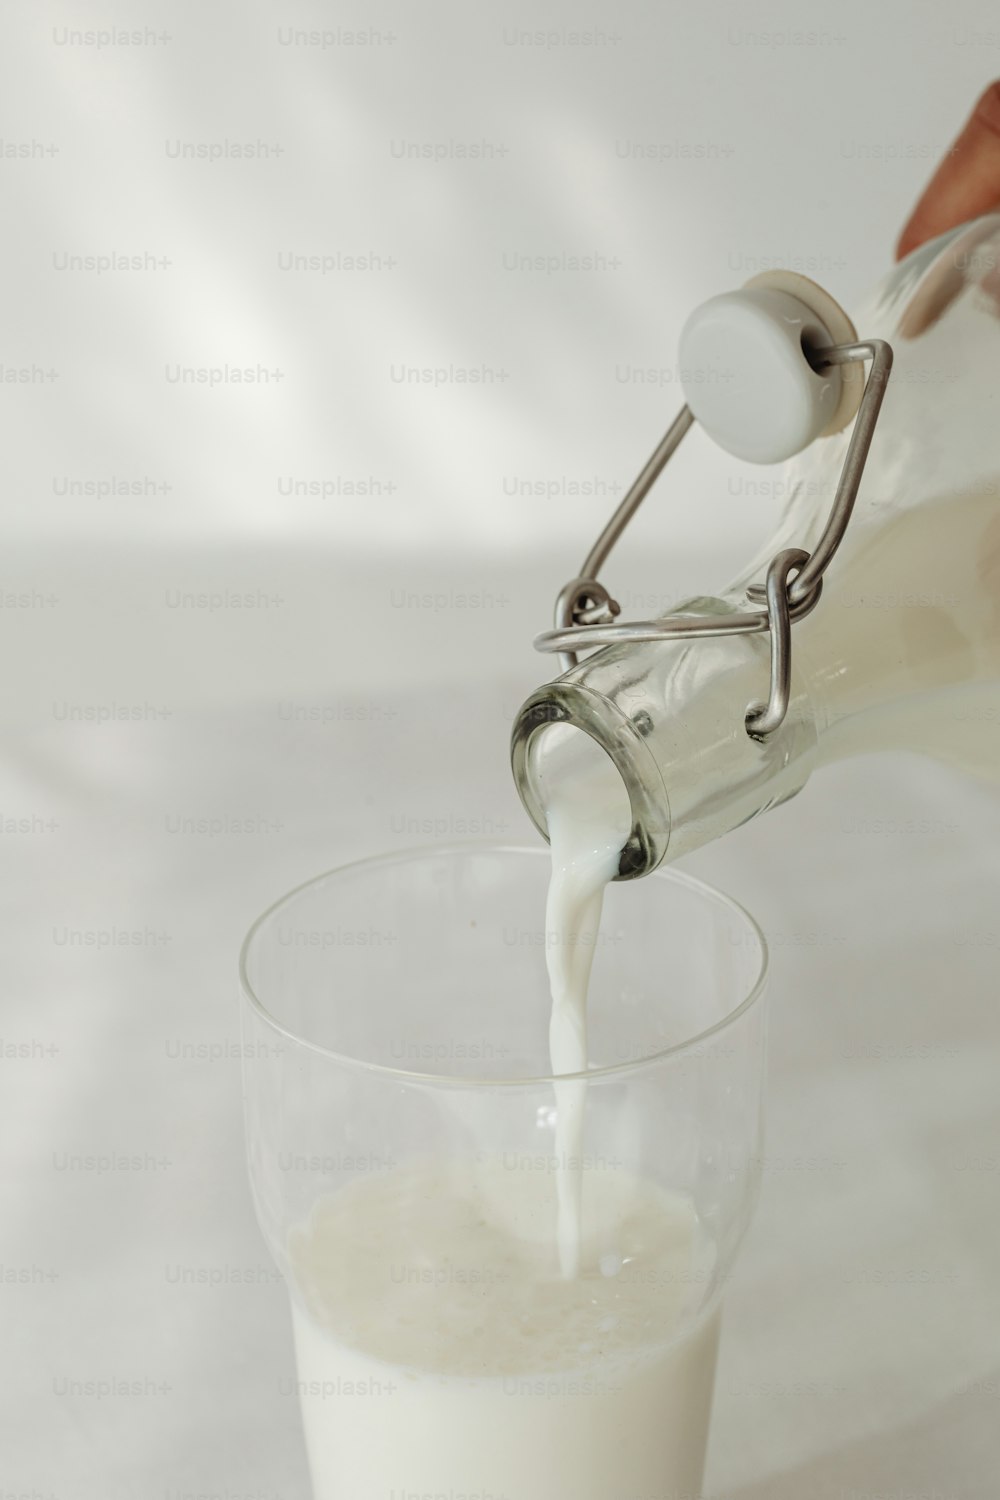 una persona vertiendo leche en un vaso